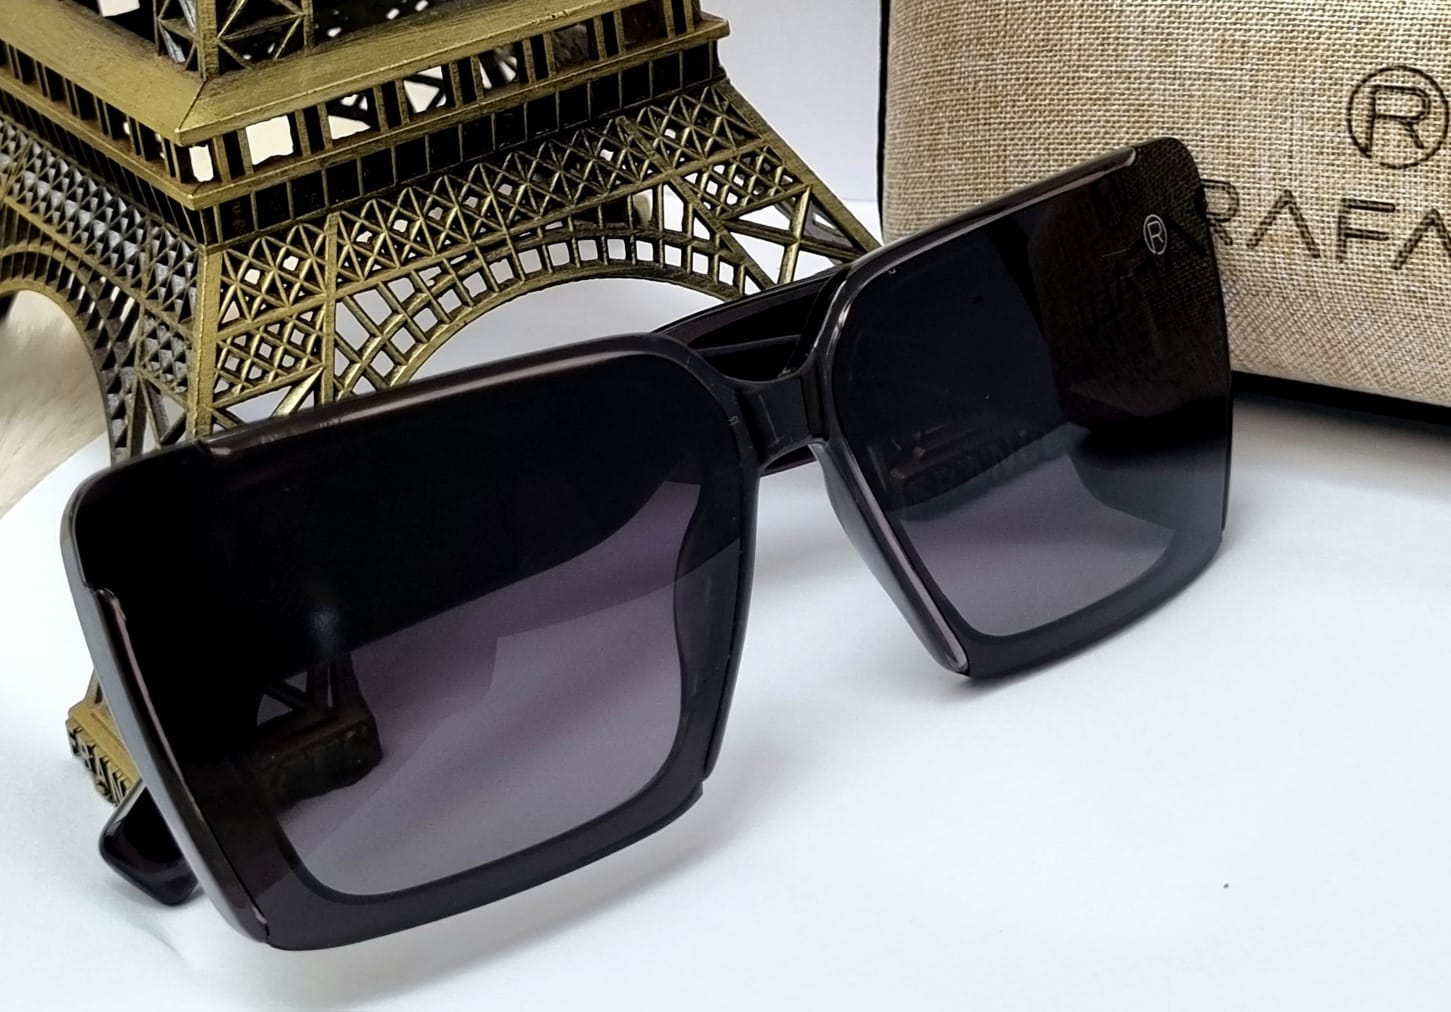 Óculos Solar Feminino Rafalu Premium M176 C5